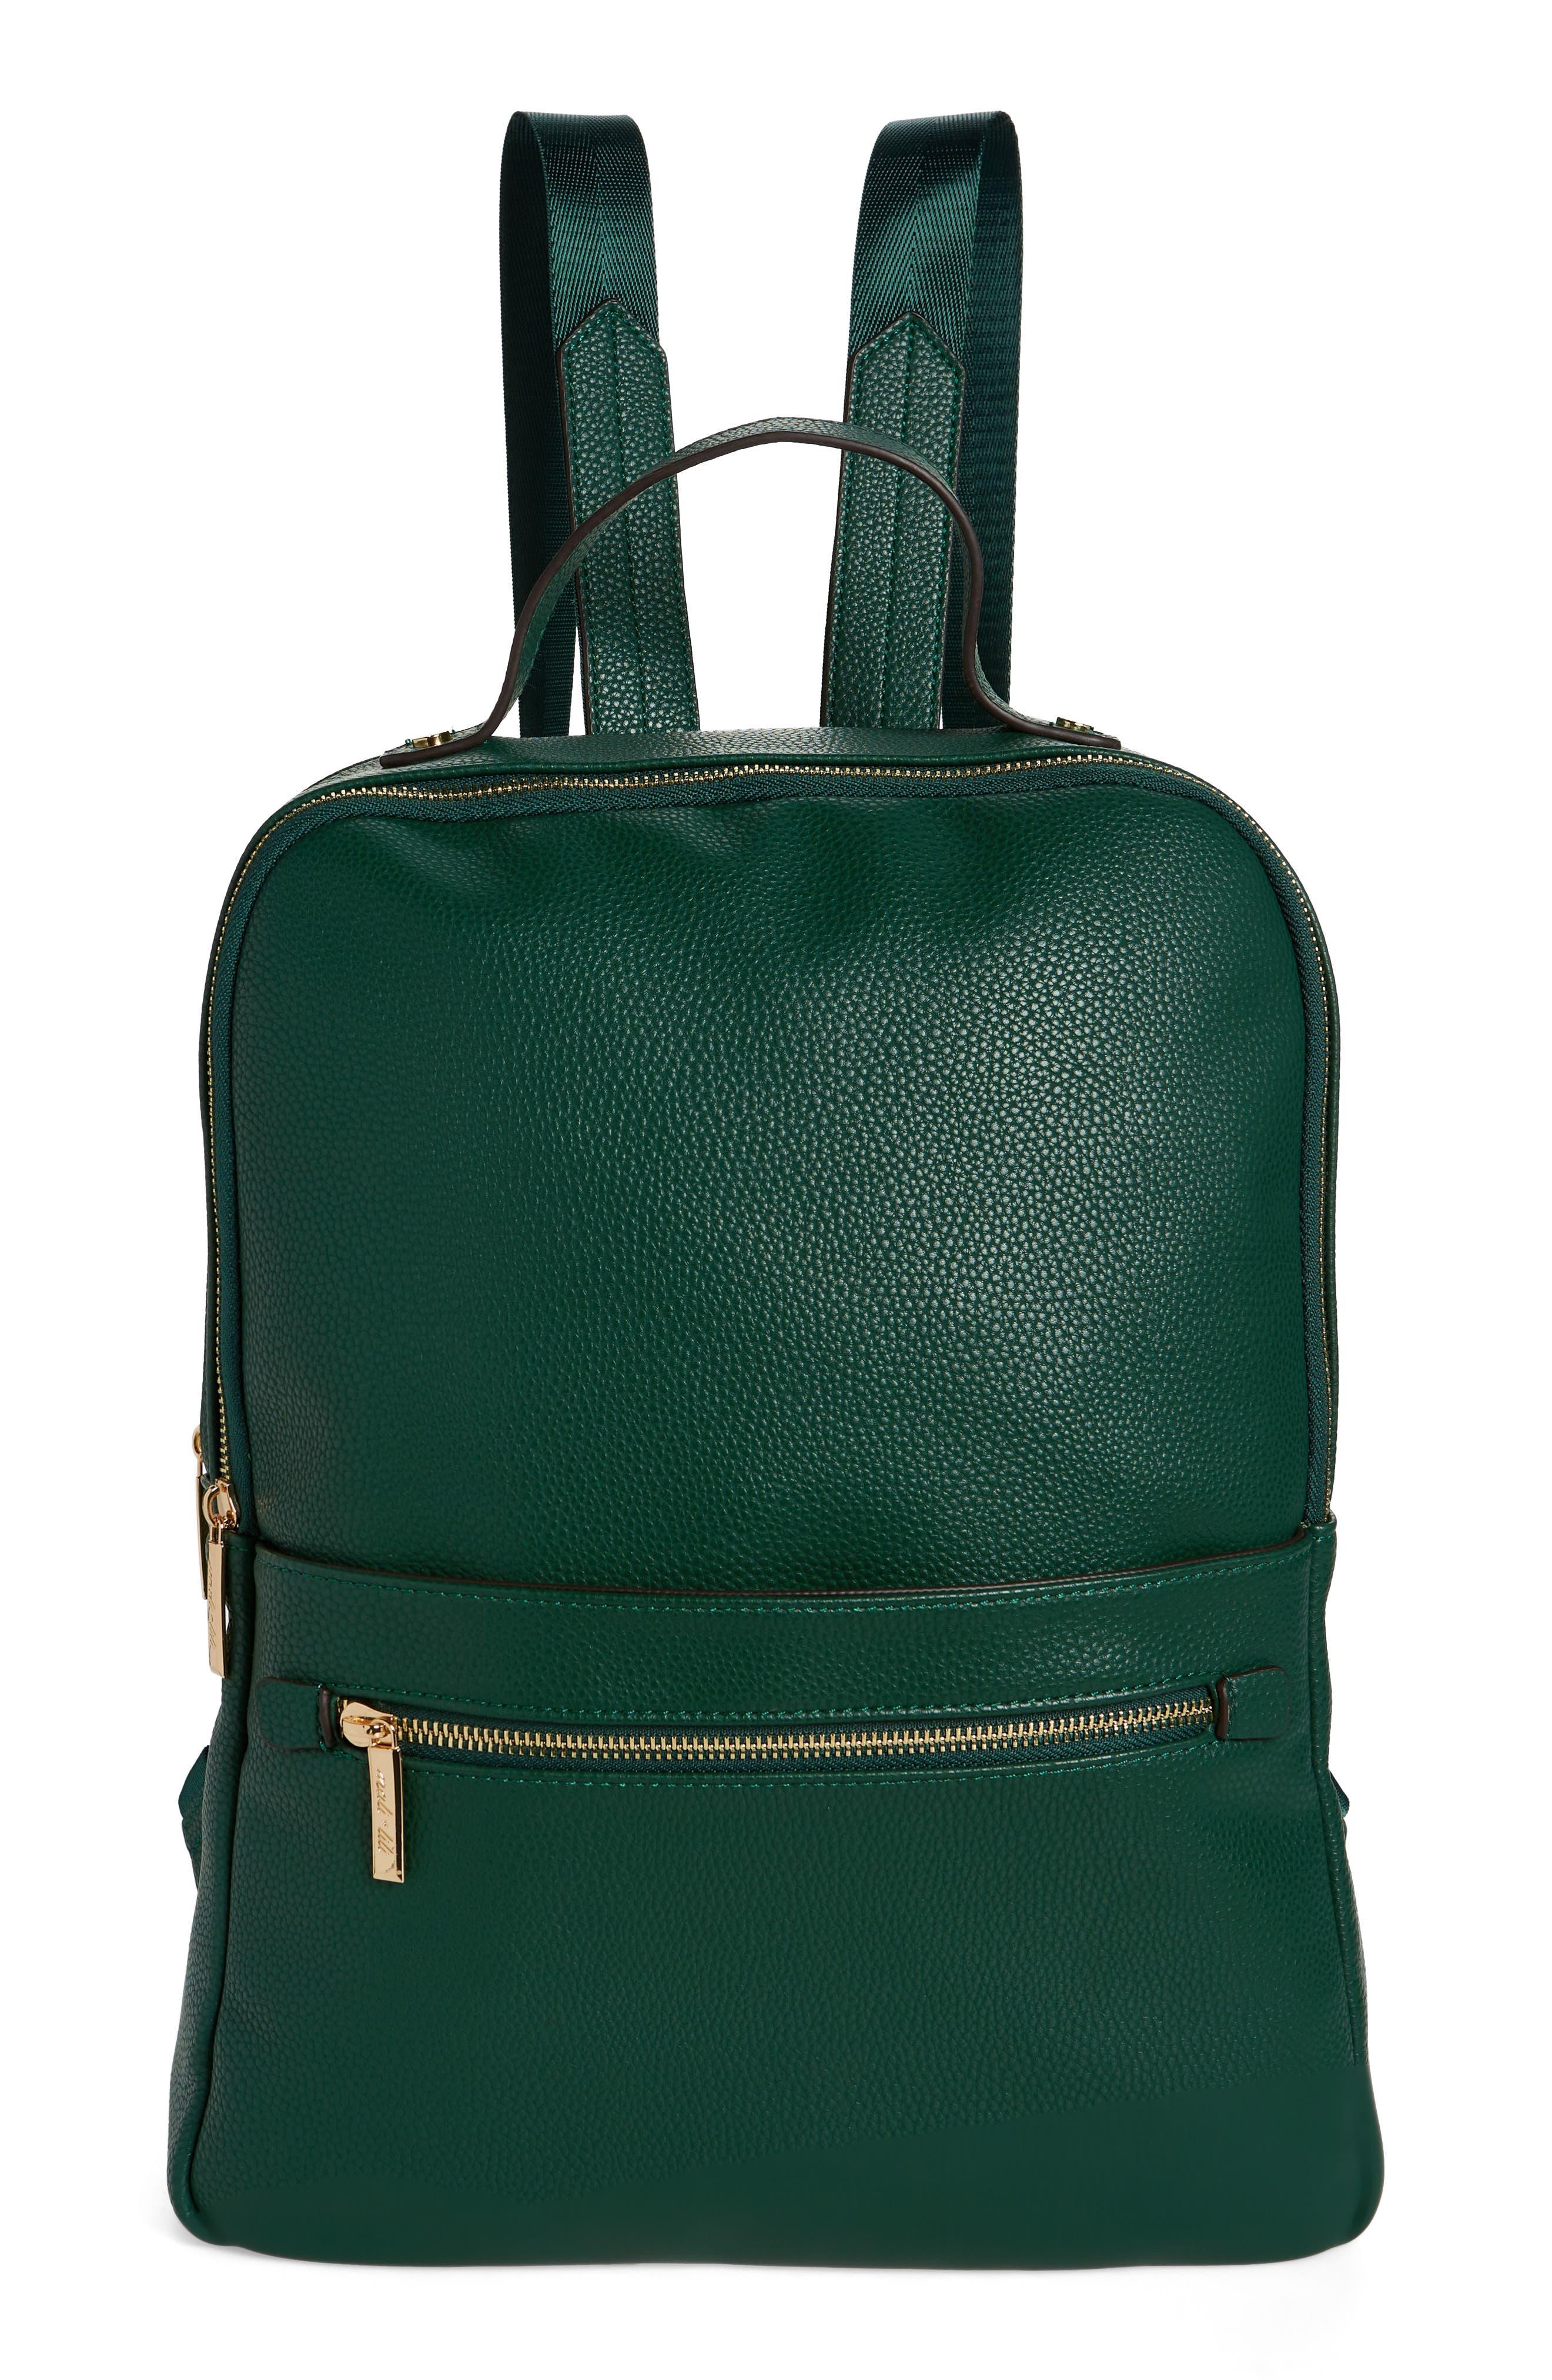 Bologna Backpack | Buy Travel Backpack | Leather Laptop Bag – BAELEDO